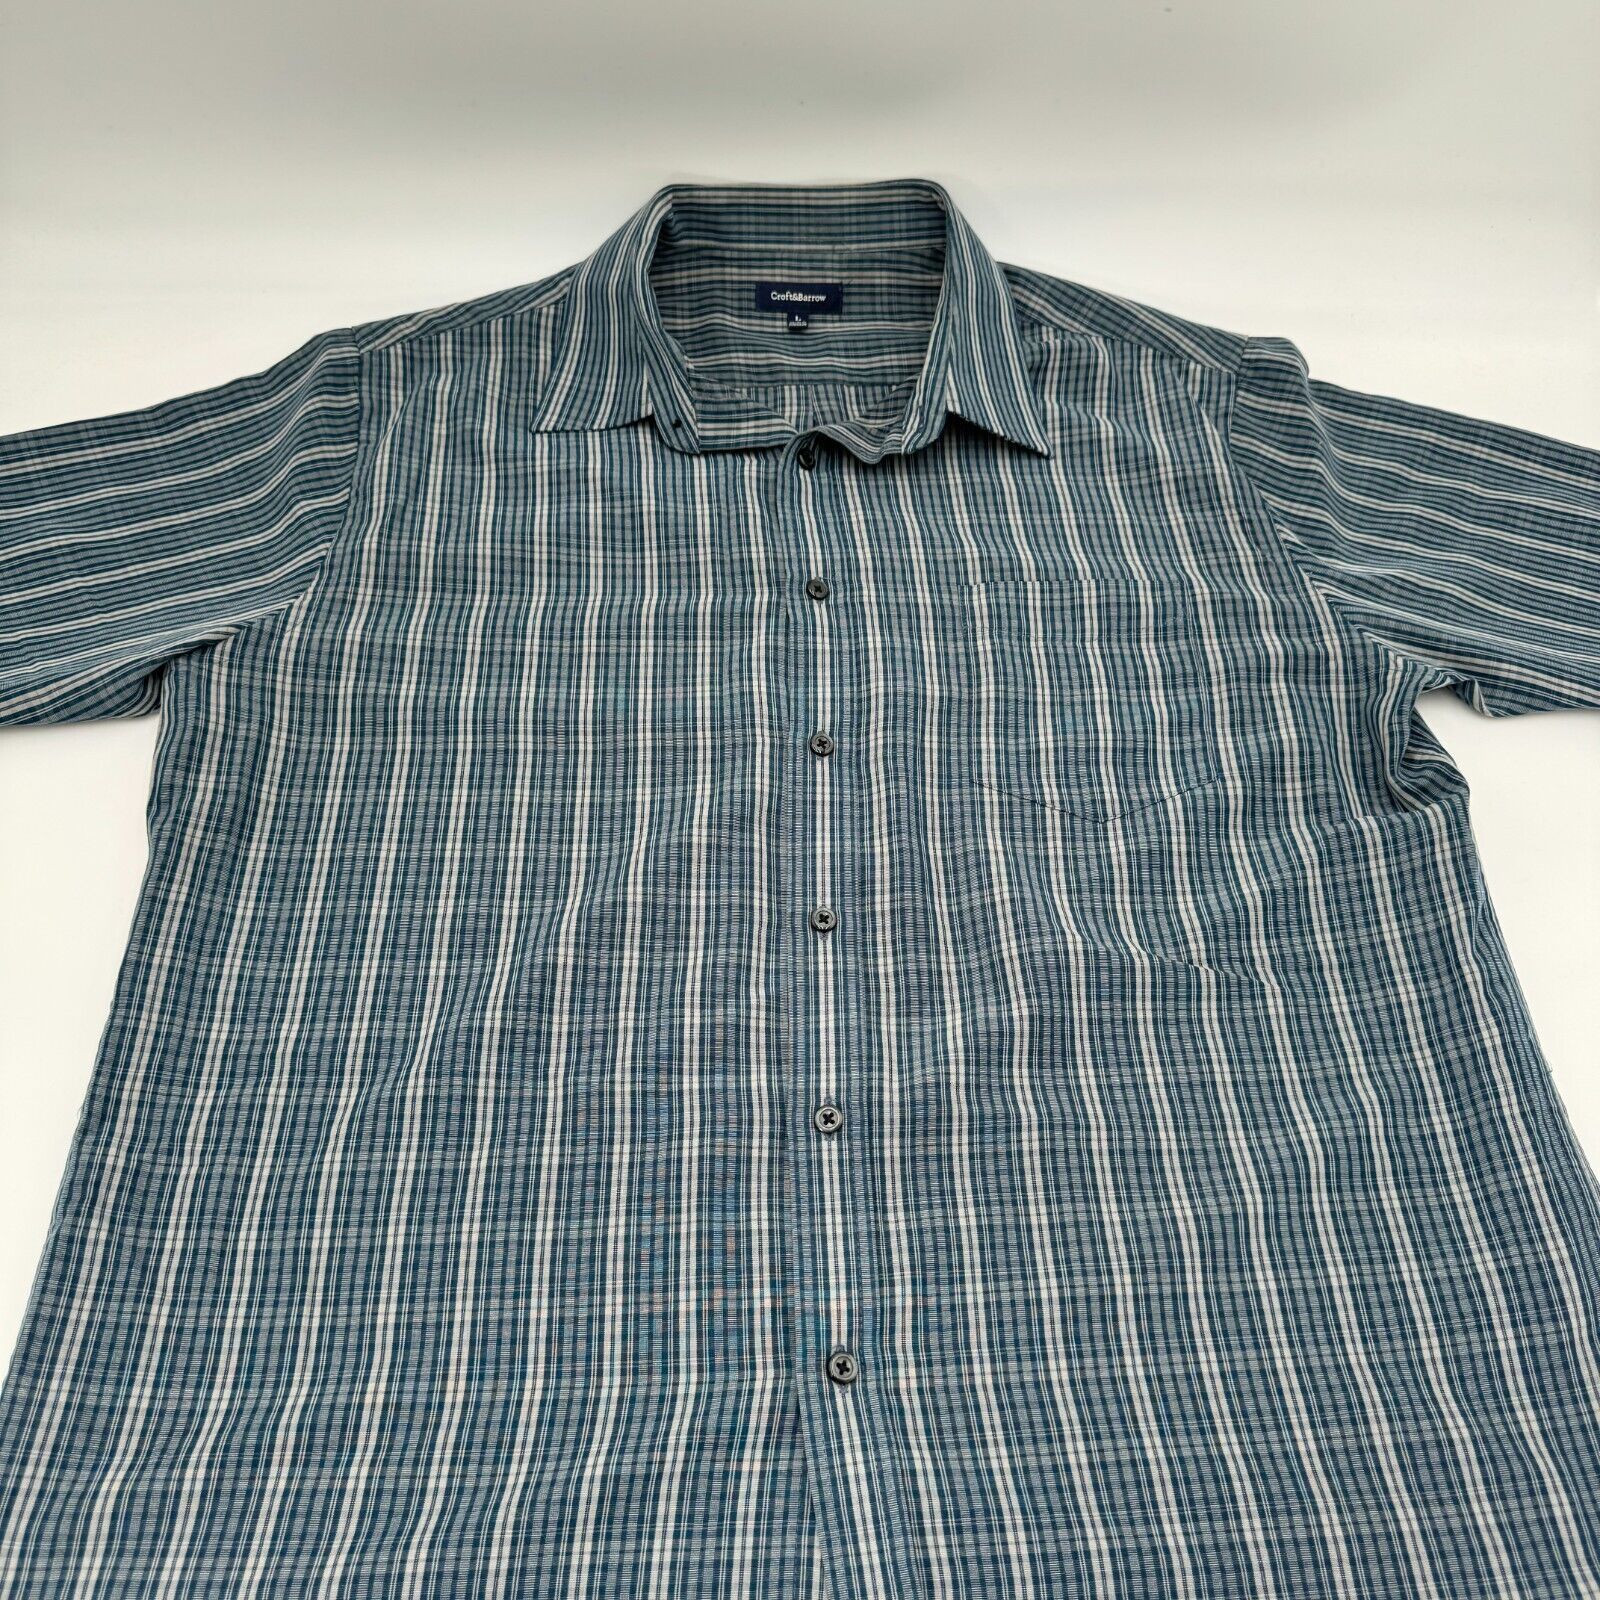 Croft & Barrow Green Tan Checkered Button Up Short Sleeve Shirt Men L